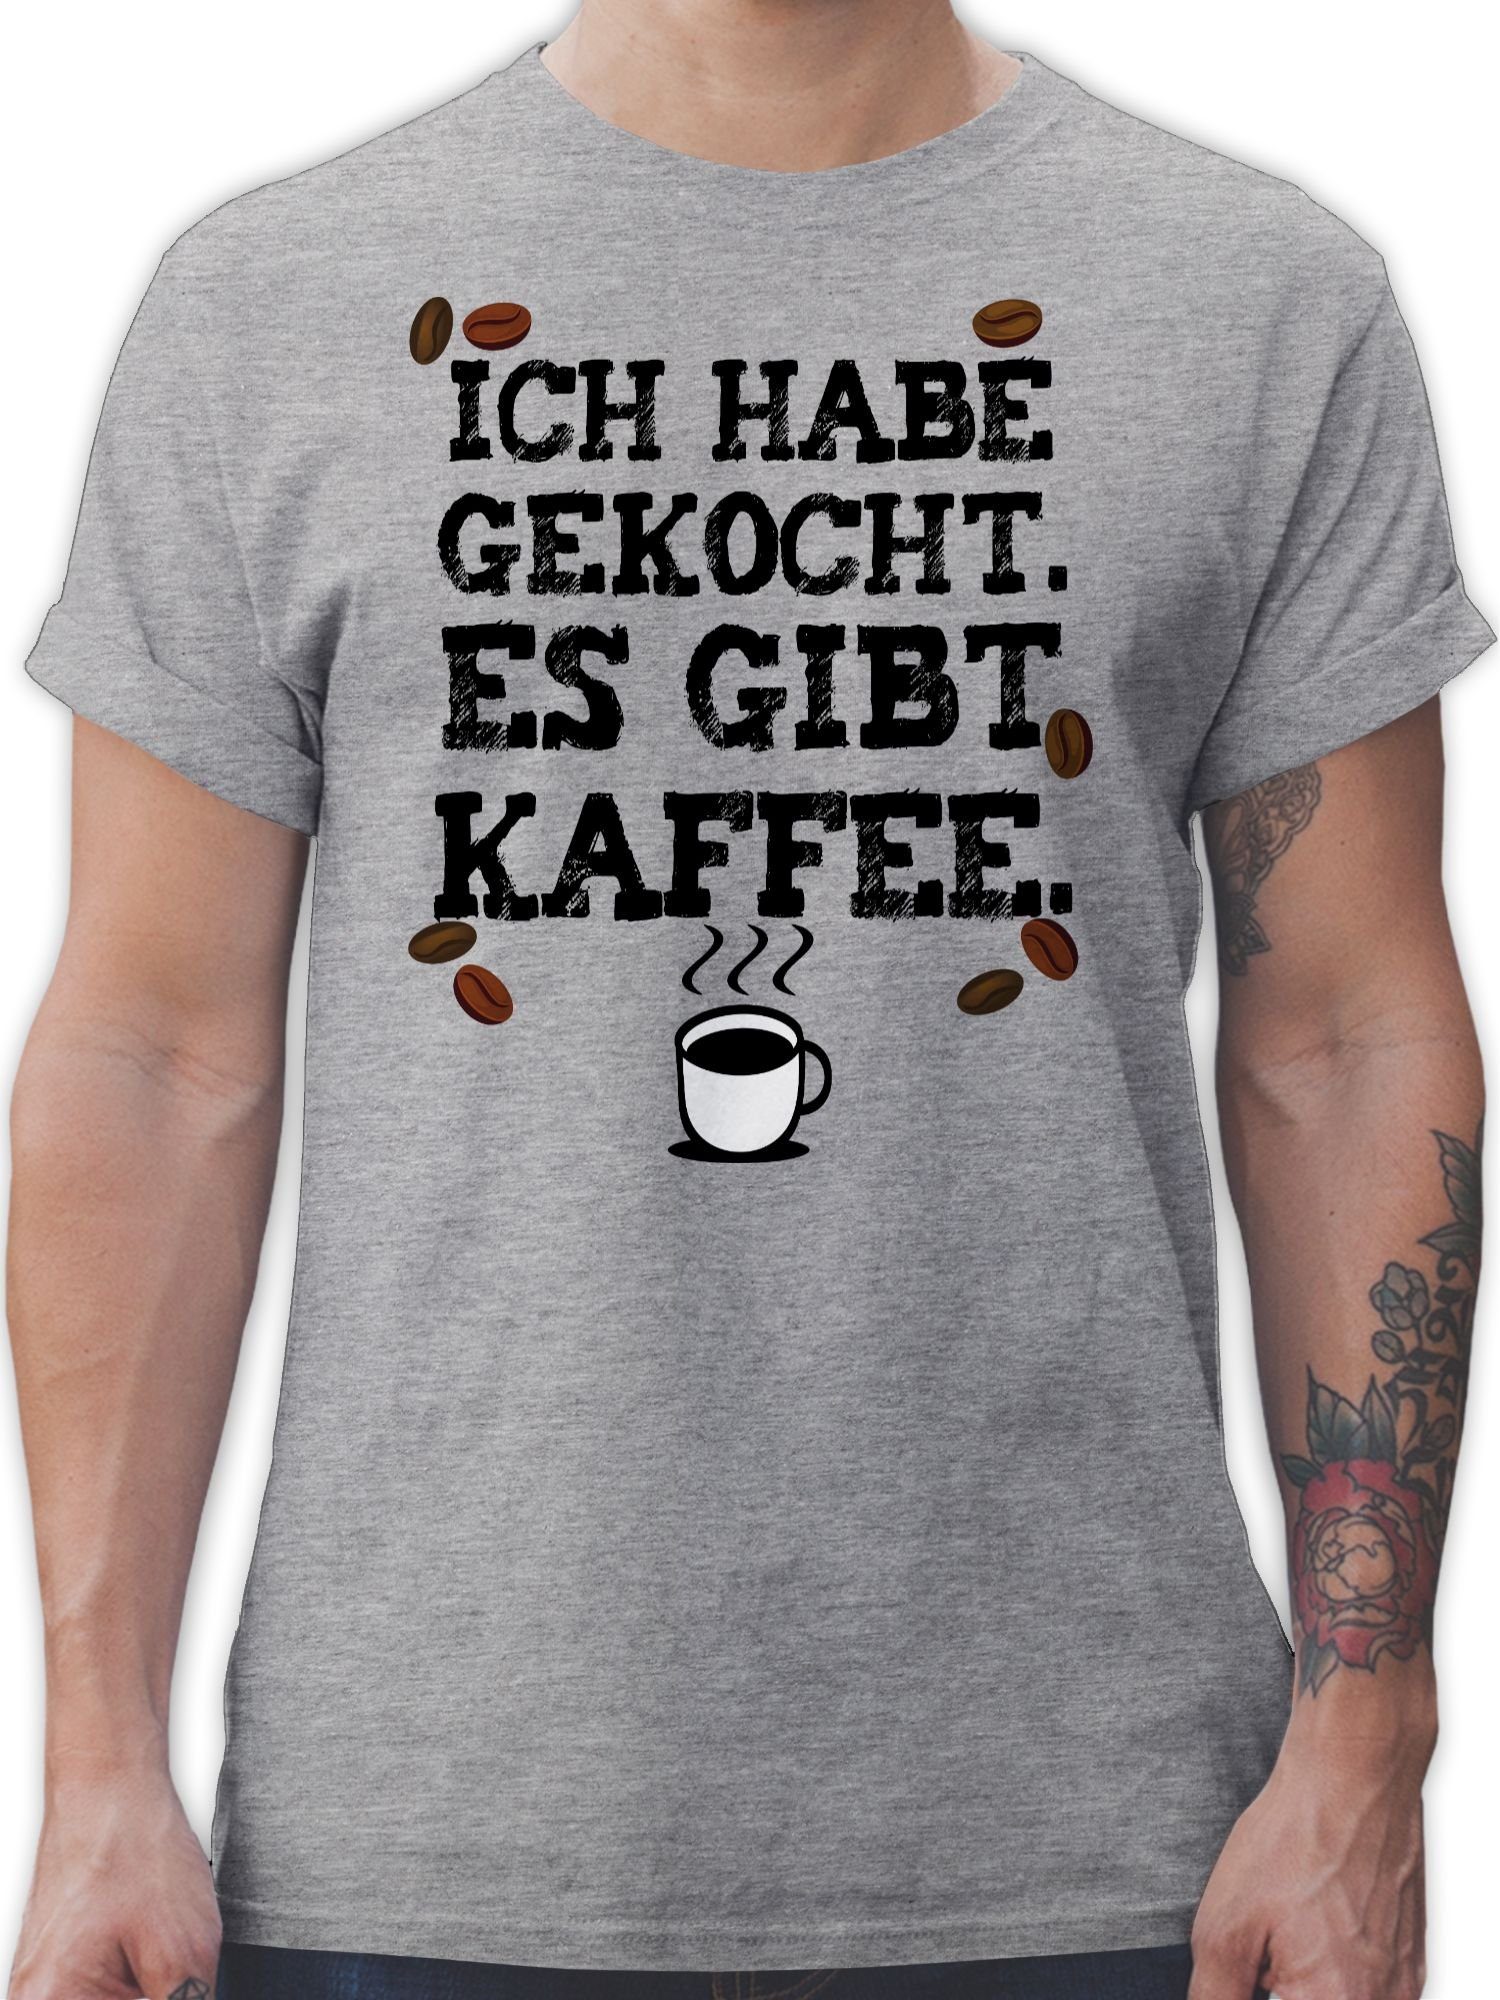 Shirtracer T-Shirt Küche Grau gibt 02 Gesc Es Kaffeejunkies gekocht. Kaffee - Kaffeeliebhaber meliert habe Ich